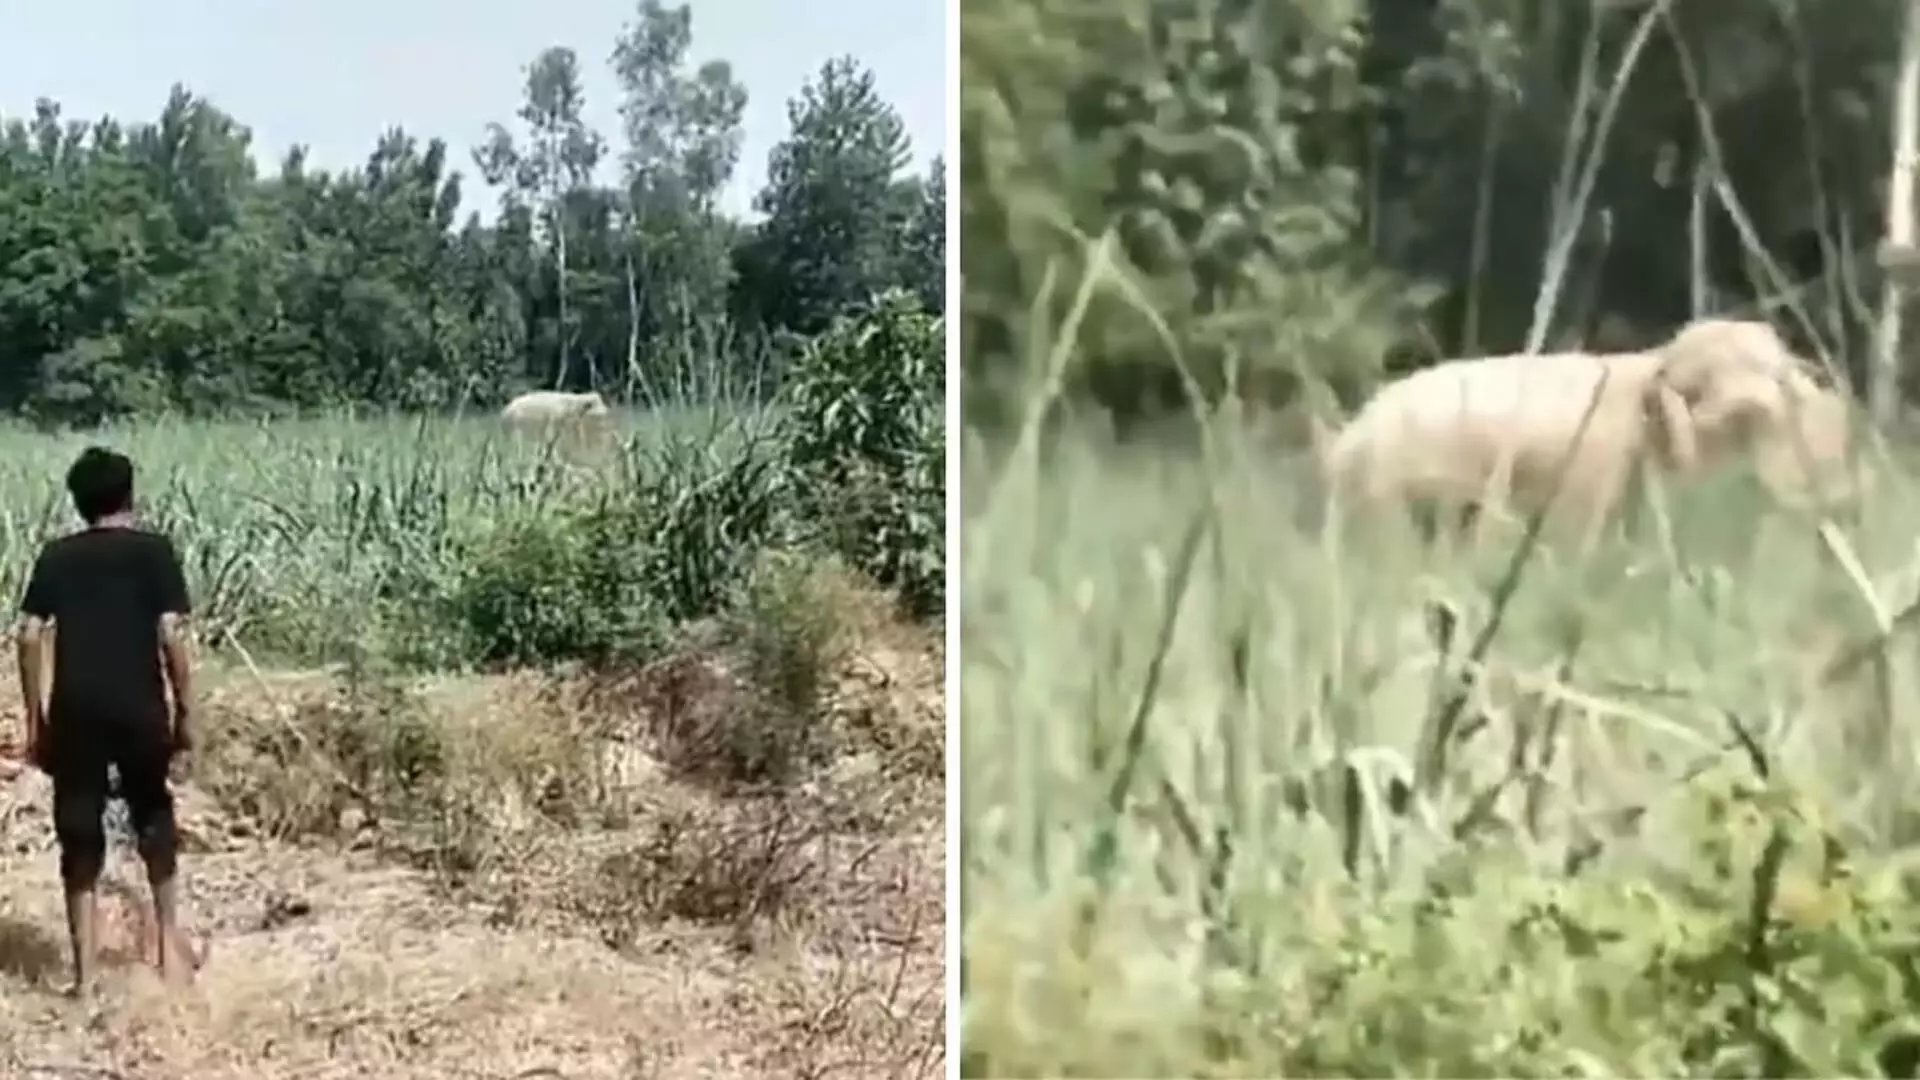 Reel बना रहे शख्स को हाथी ने कुचलकर मार डाला, दर्दनाक वीडियो वायरल